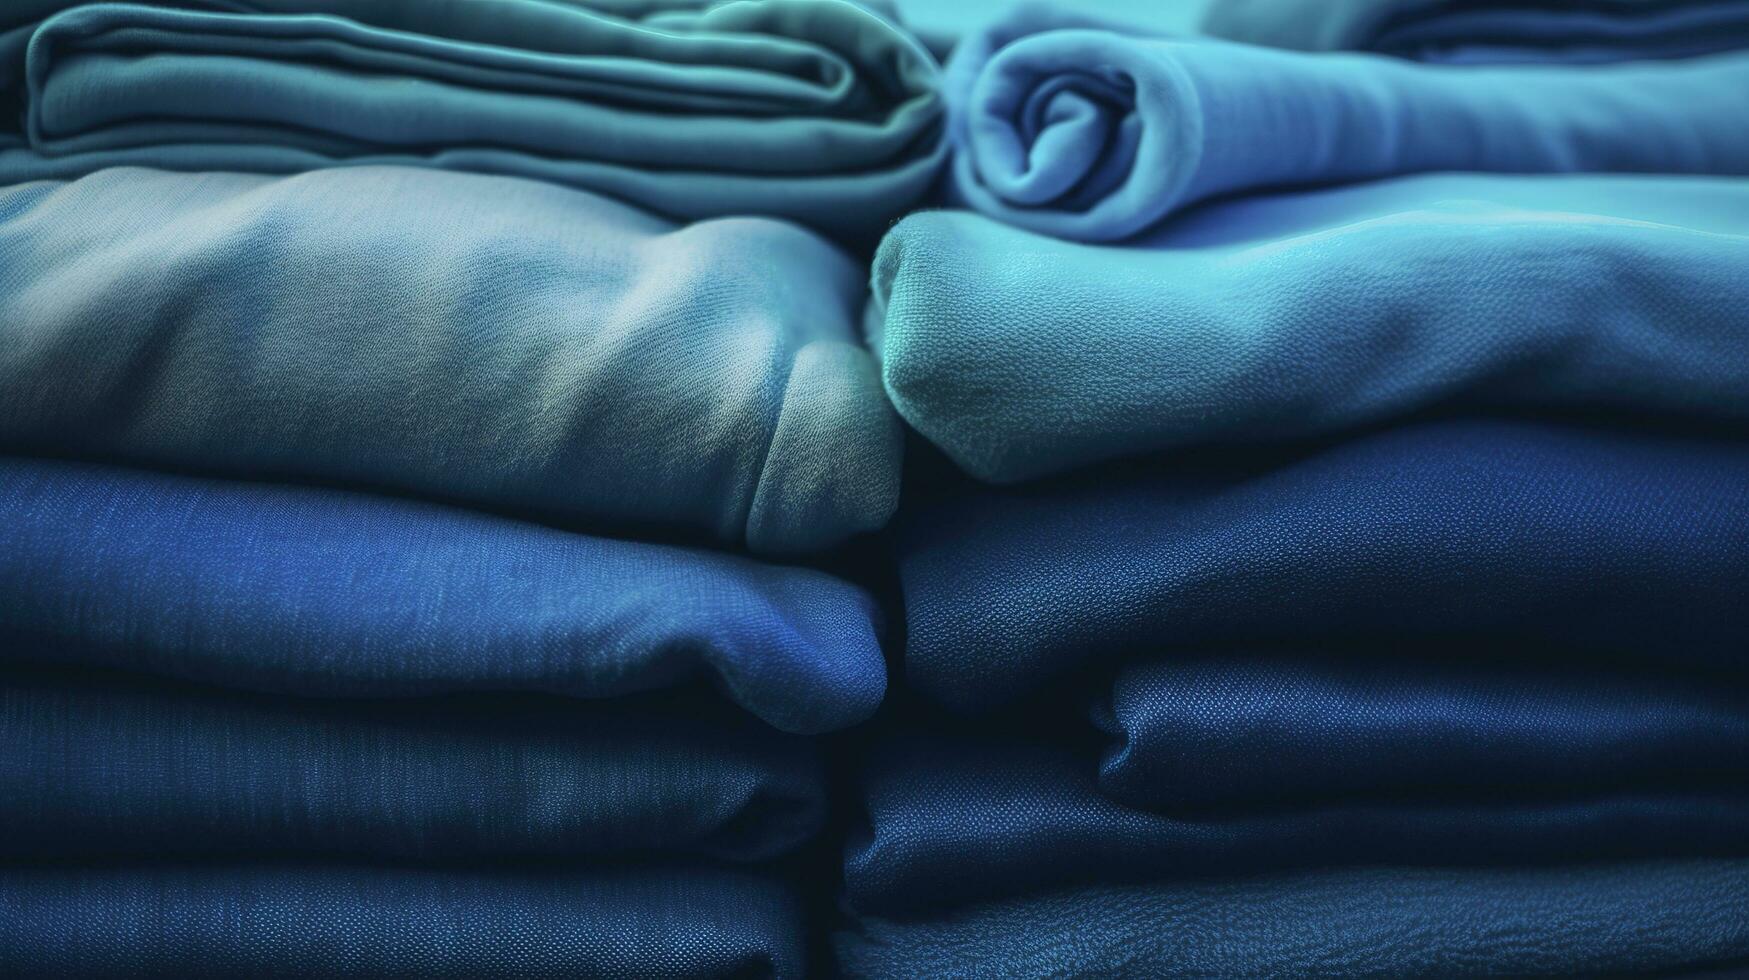 blå duk skriva ut torkdukar textil- bakgrund blå tyg, i de stil av tonal variationer i Färg, ljus cyan och Marin, vibrerande spektrum färger, textil- installation, generera ai foto